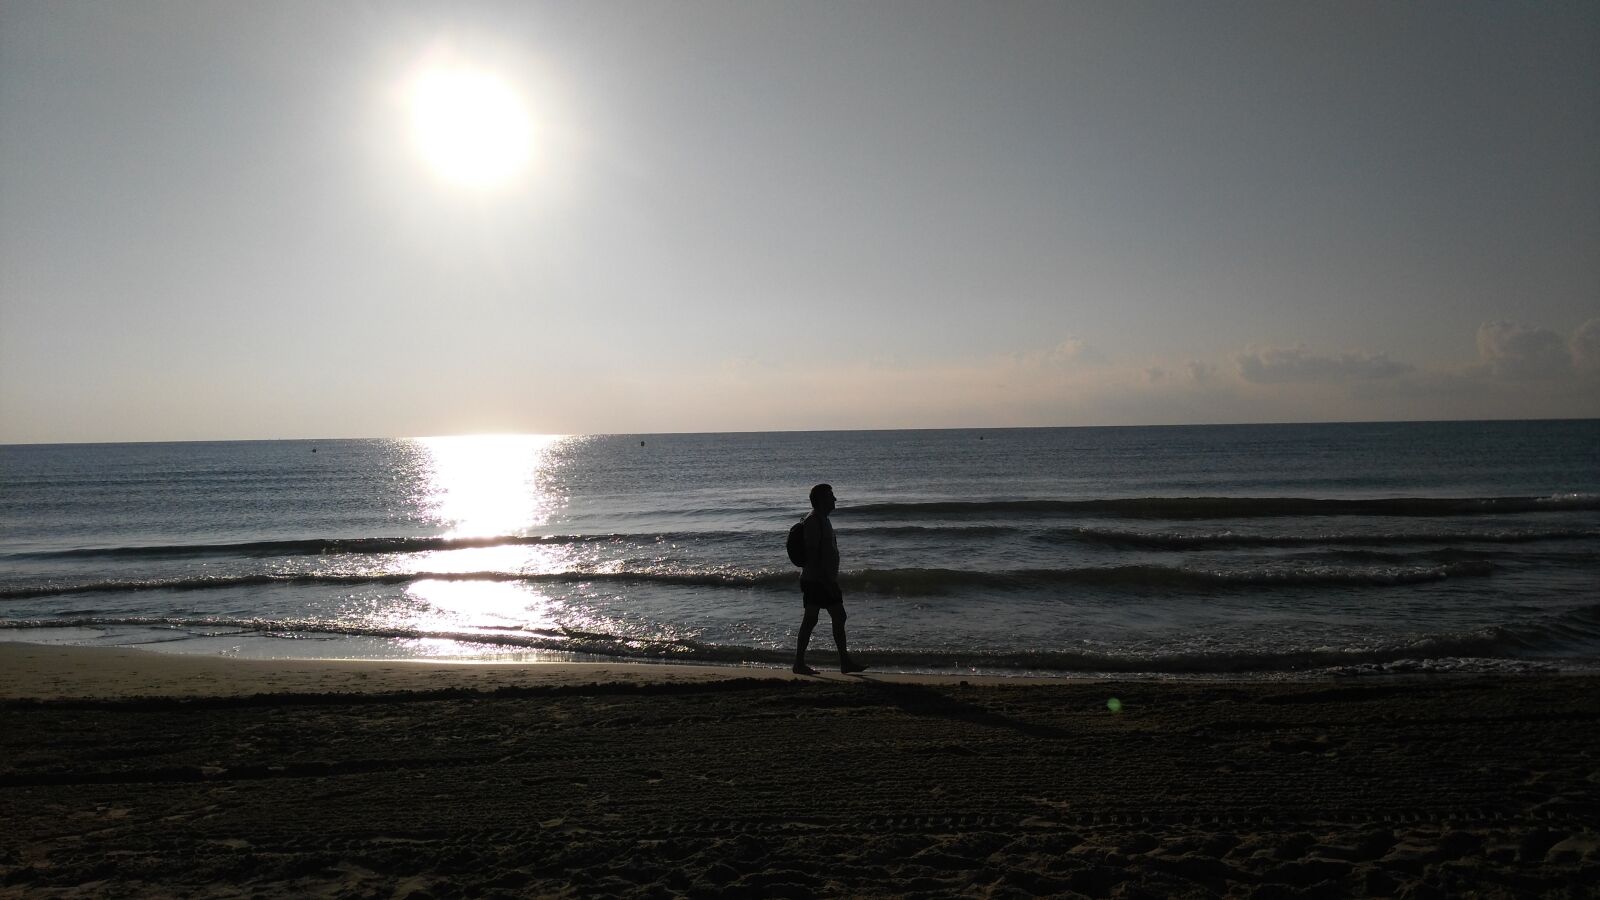 HUAWEI G7-L01 sample photo. Sea, beach, dawn photography